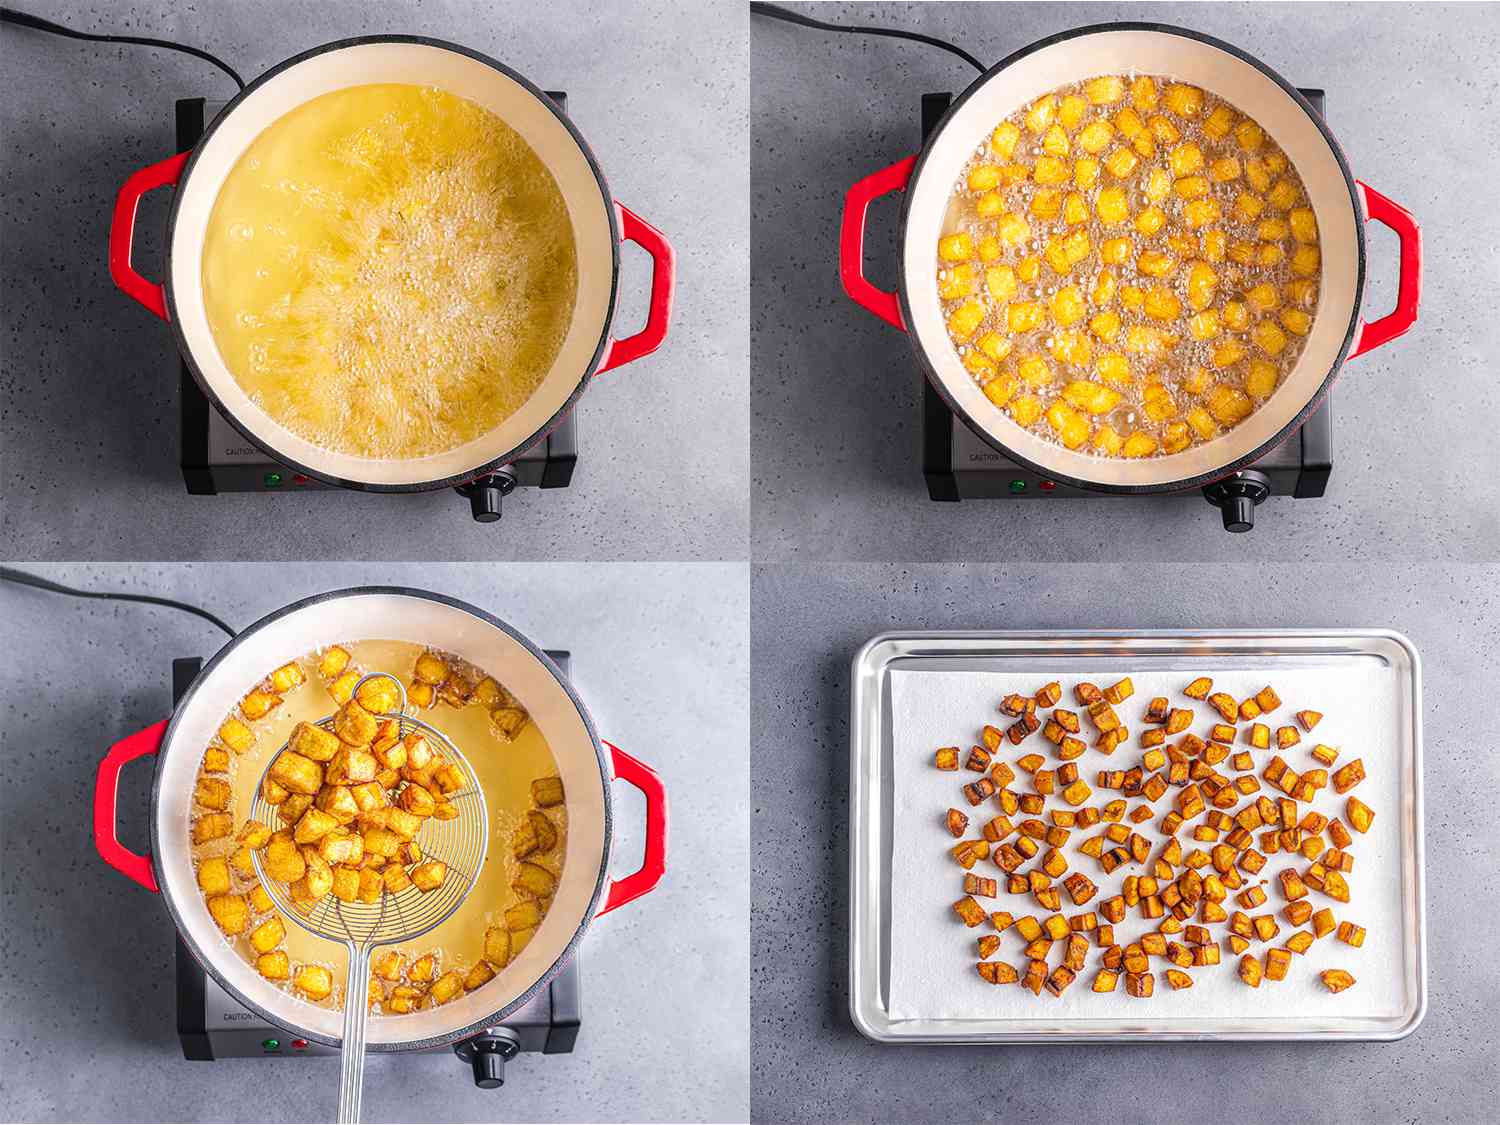 4图像拼贴,顺时针方向从左上角:石油在荷兰烤肉锅冒泡,大蕉油煎,大蕉被挖出的石油使用金属蜘蛛,和油炸大蕉放在一个烤盘